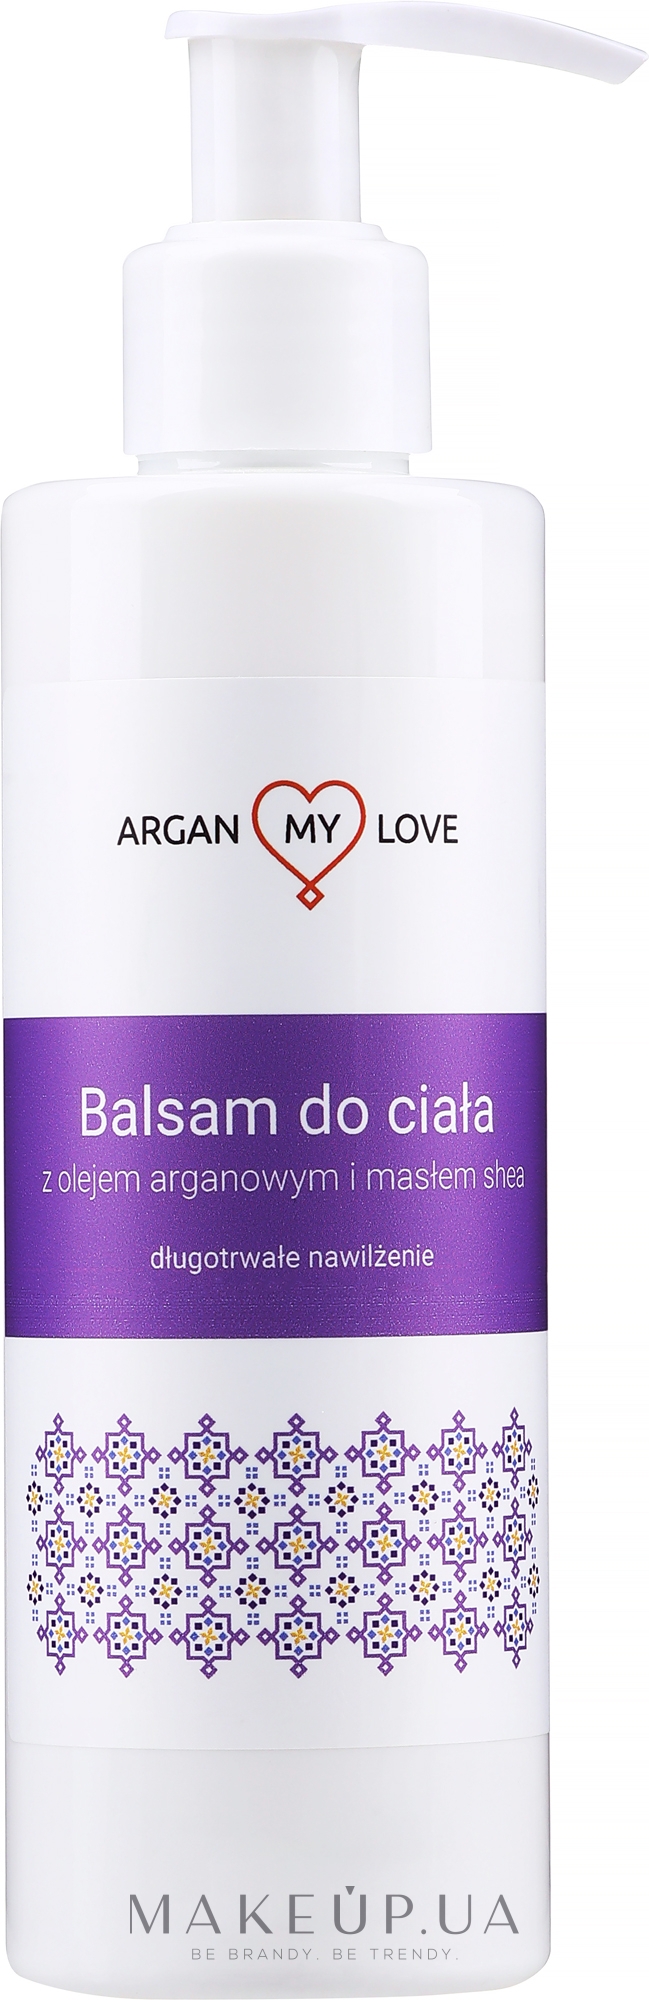 Живильний бальзам для тіла, з маслом каріте - Argan My Love Oriental Body Balm Shea Butter & Argan Oil — фото 200ml